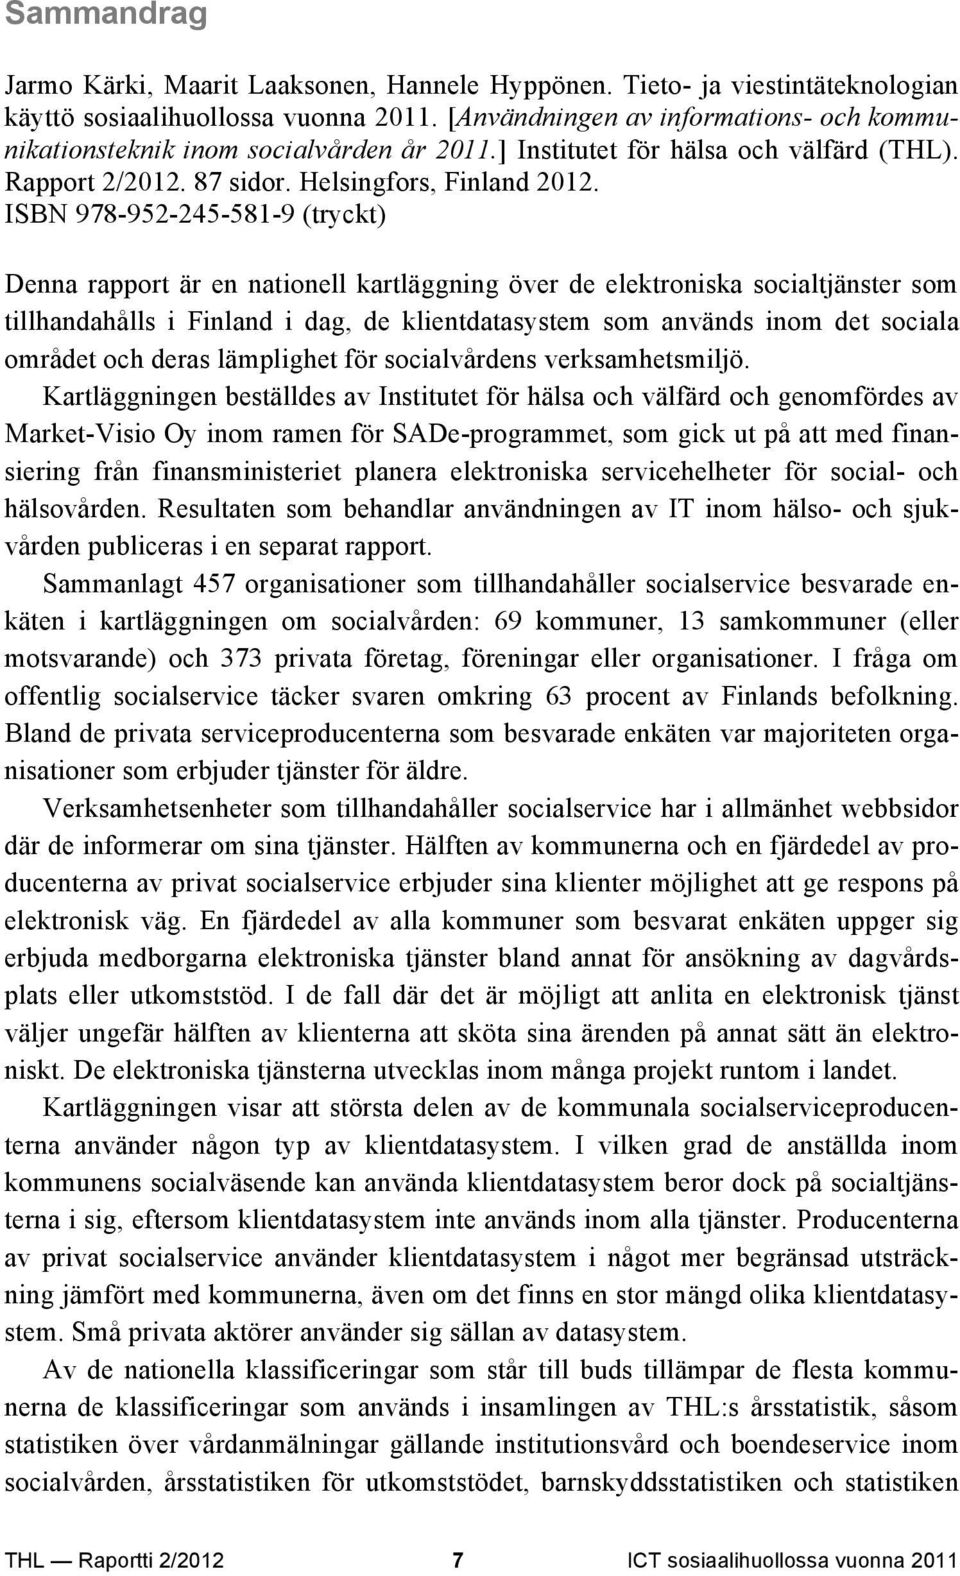 ISBN 978-952-245-581-9 (tryckt) Denna rapport är en nationell kartläggning över de elektroniska socialtjänster som tillhandahålls i Finland i dag, de klientdatasystem som används inom det sociala